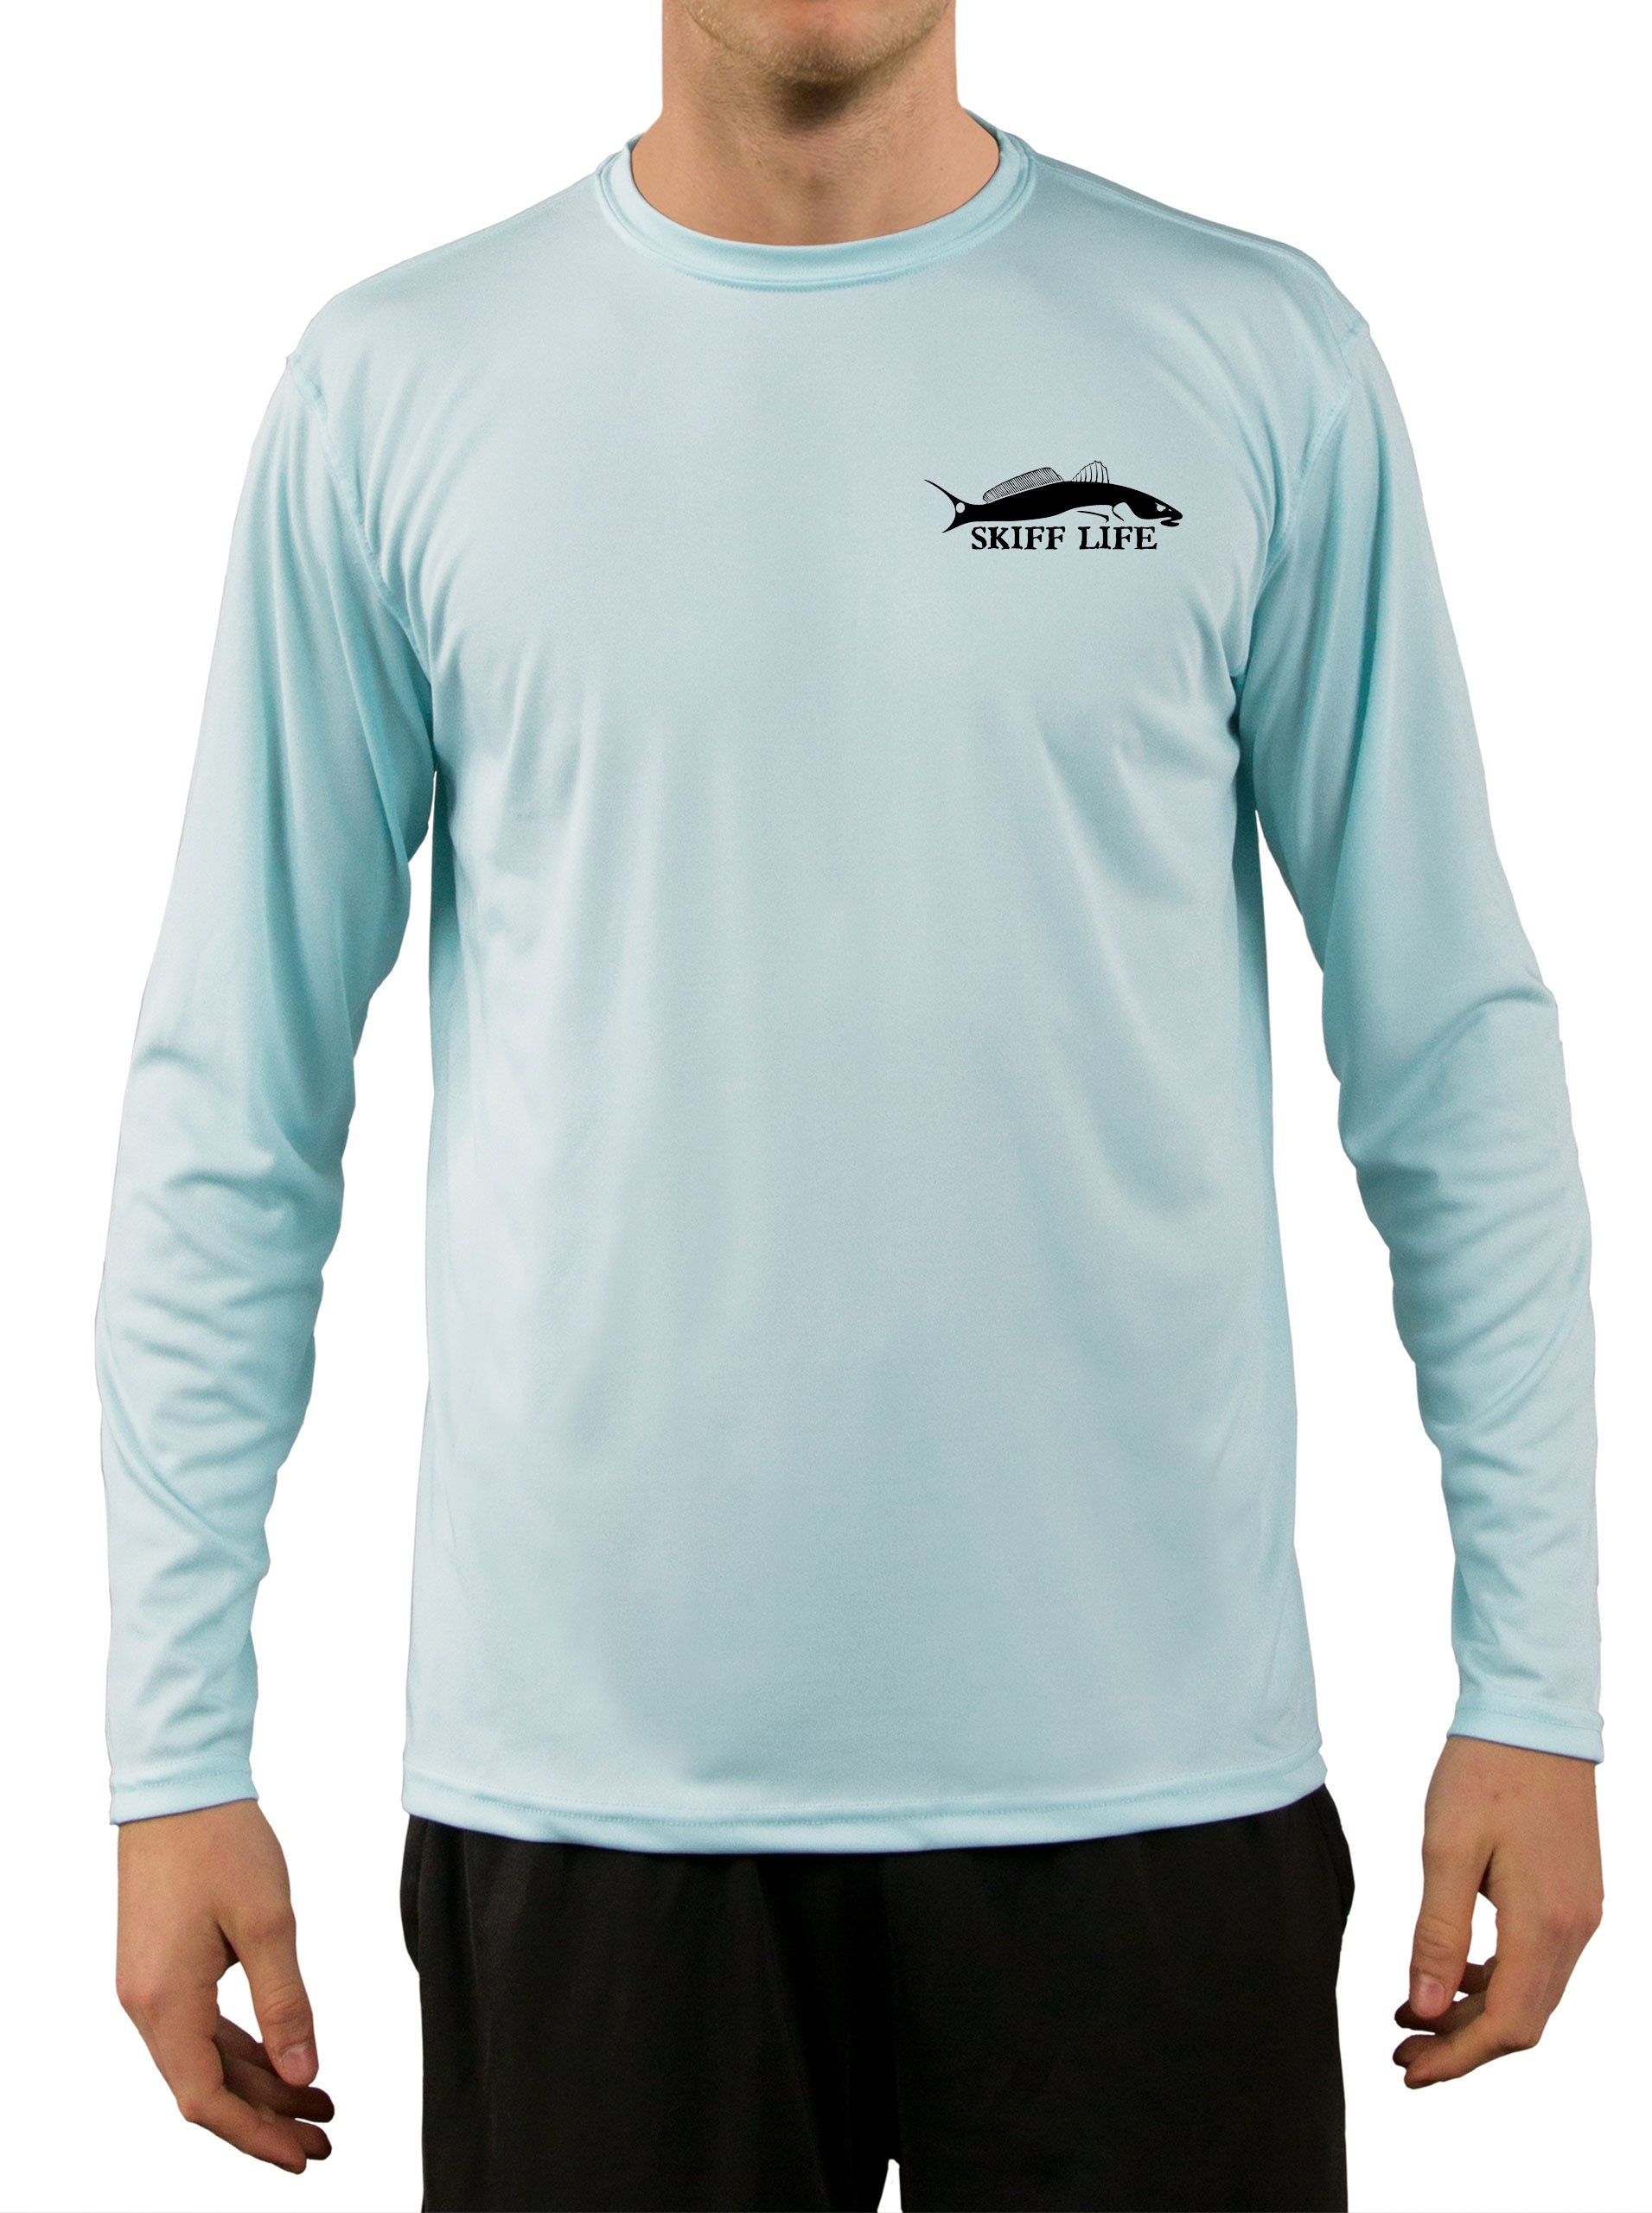 Camisas de pesca para hombre, camisas de manga larga ligeras UPF